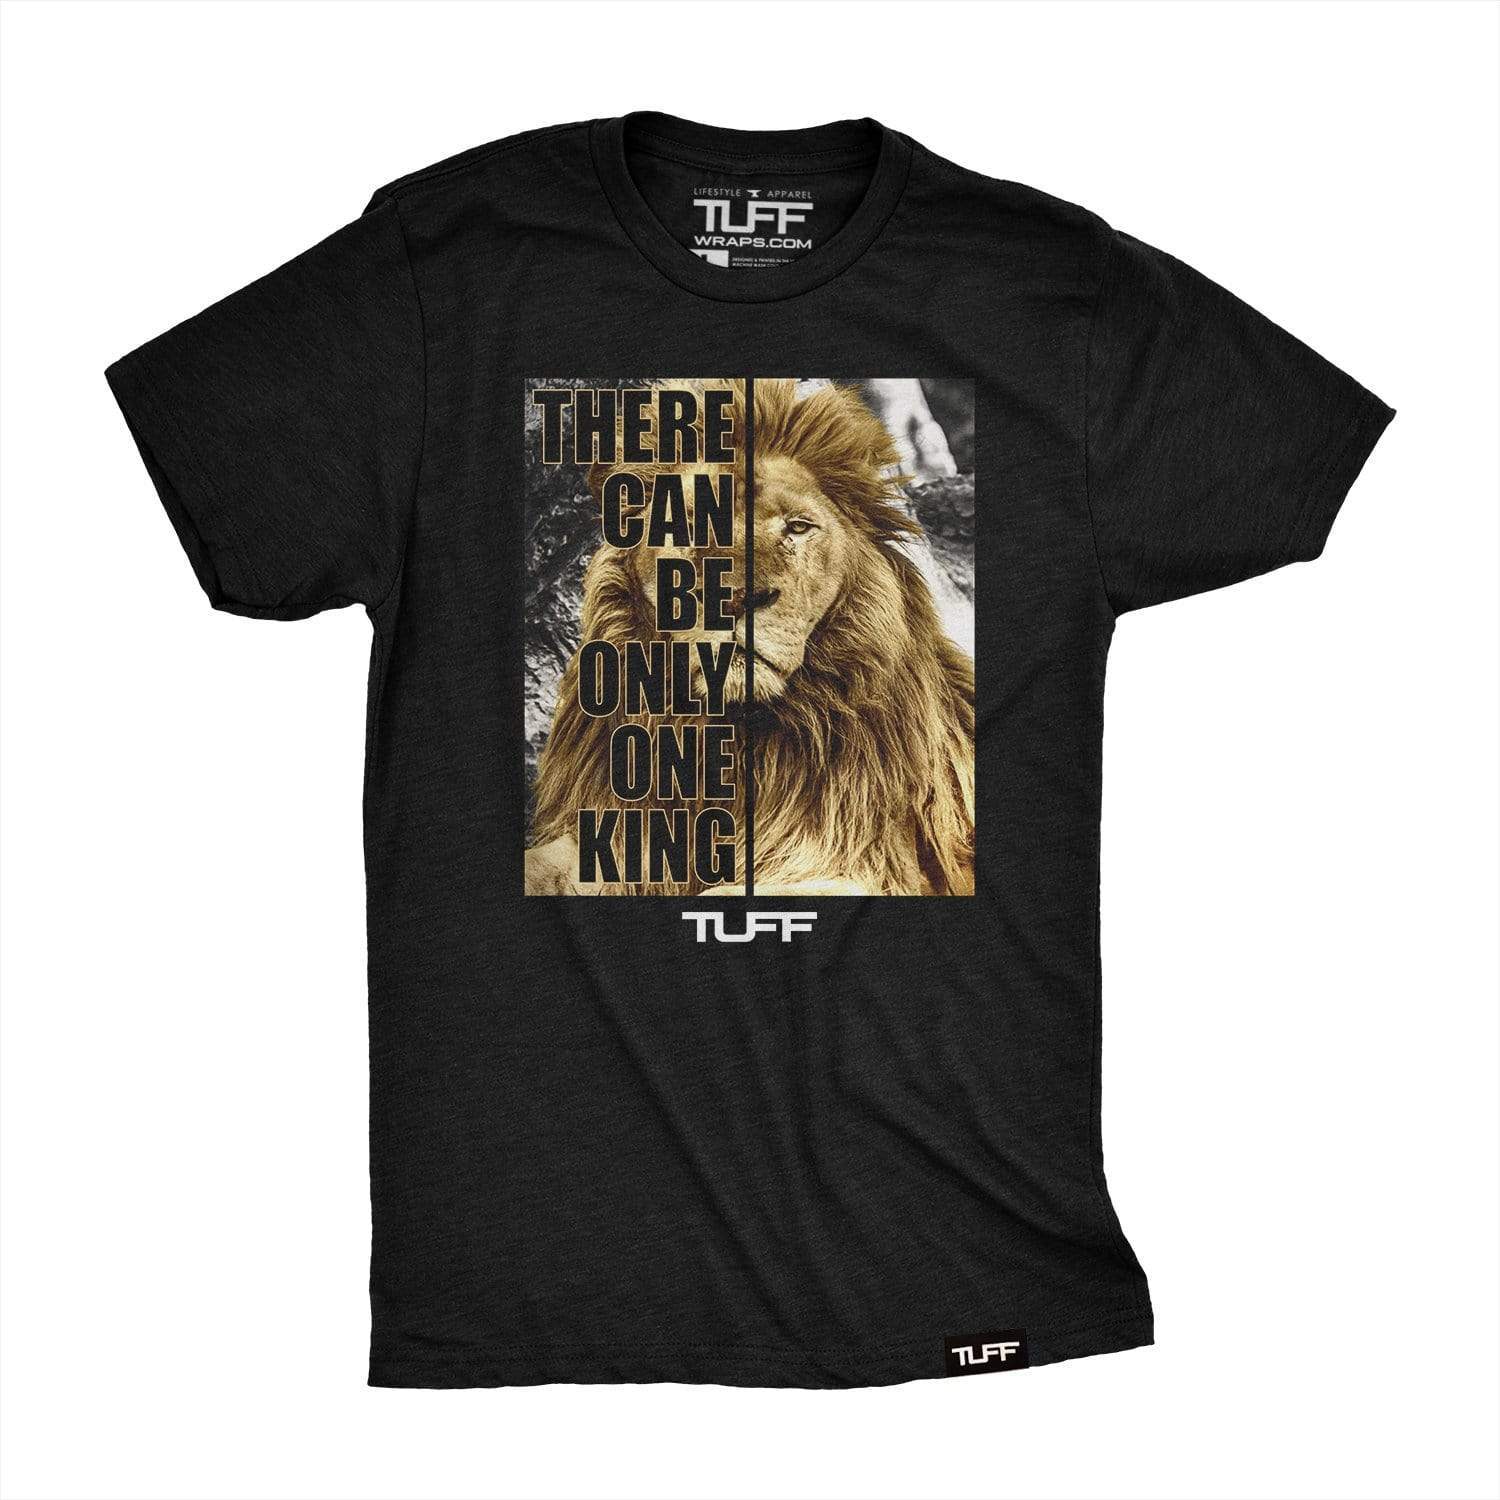 The Lion King Tee S / Black TuffWraps.com